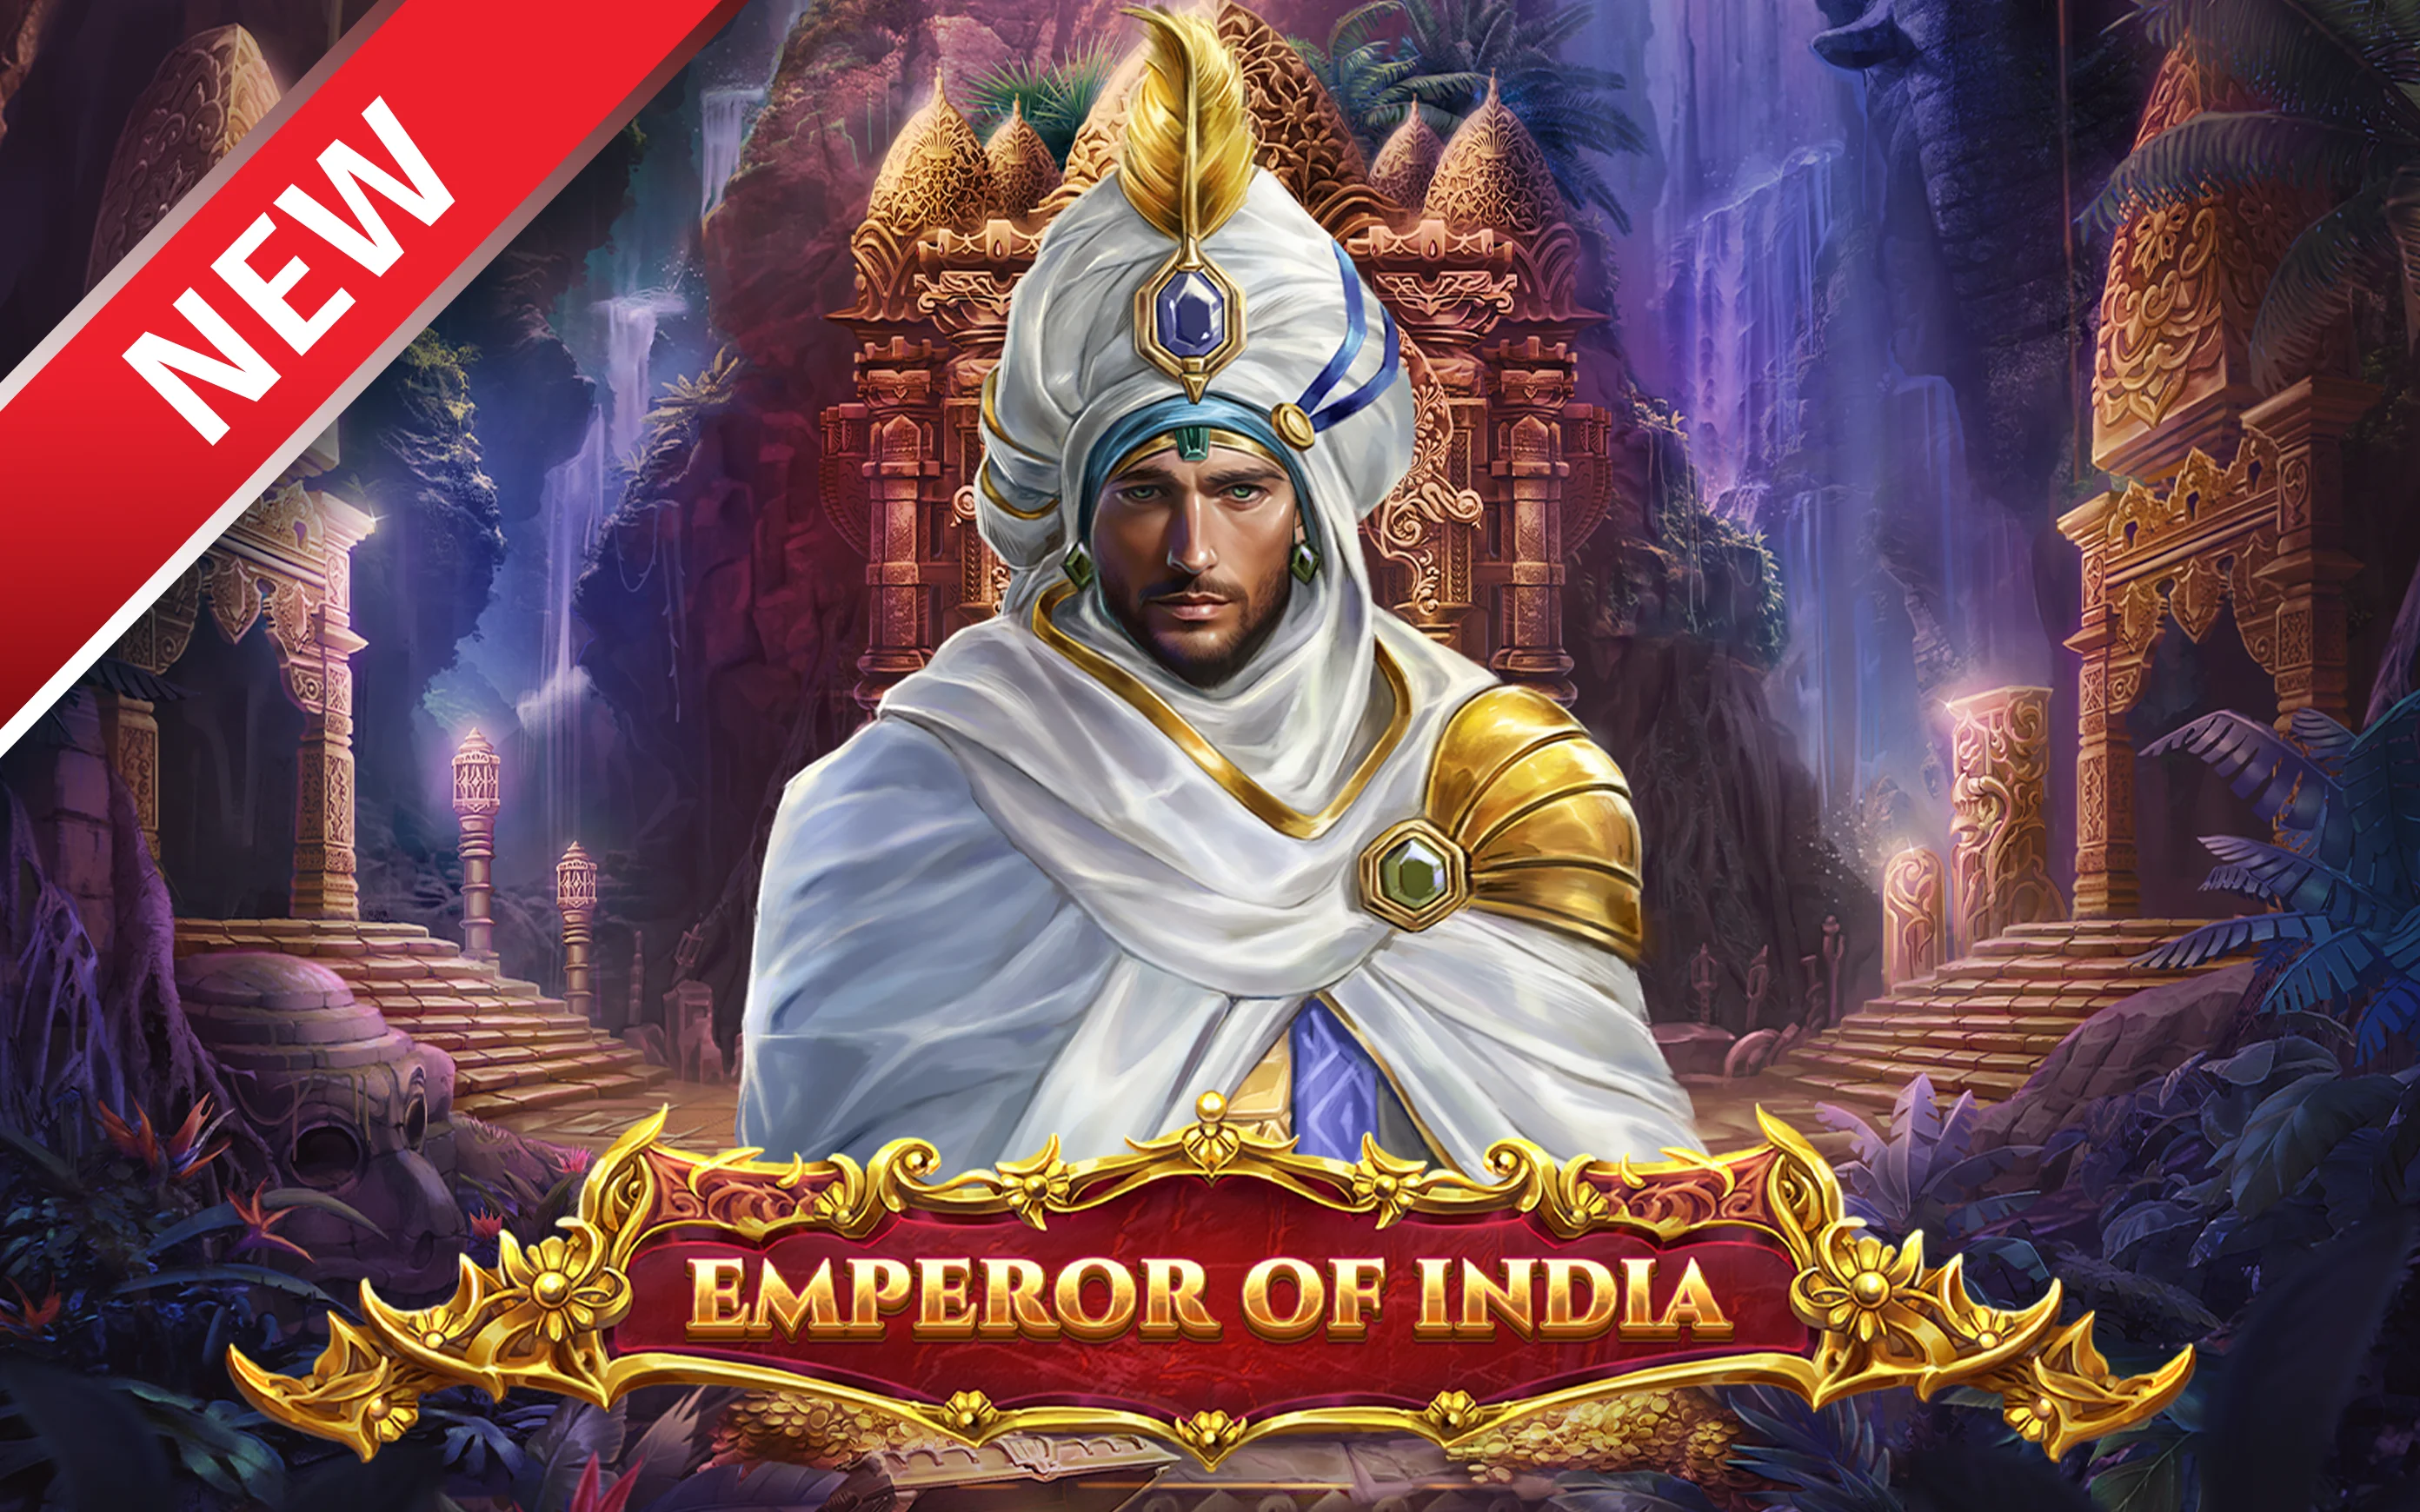 Zagraj w Emperor of India w kasynie online Starcasino.be